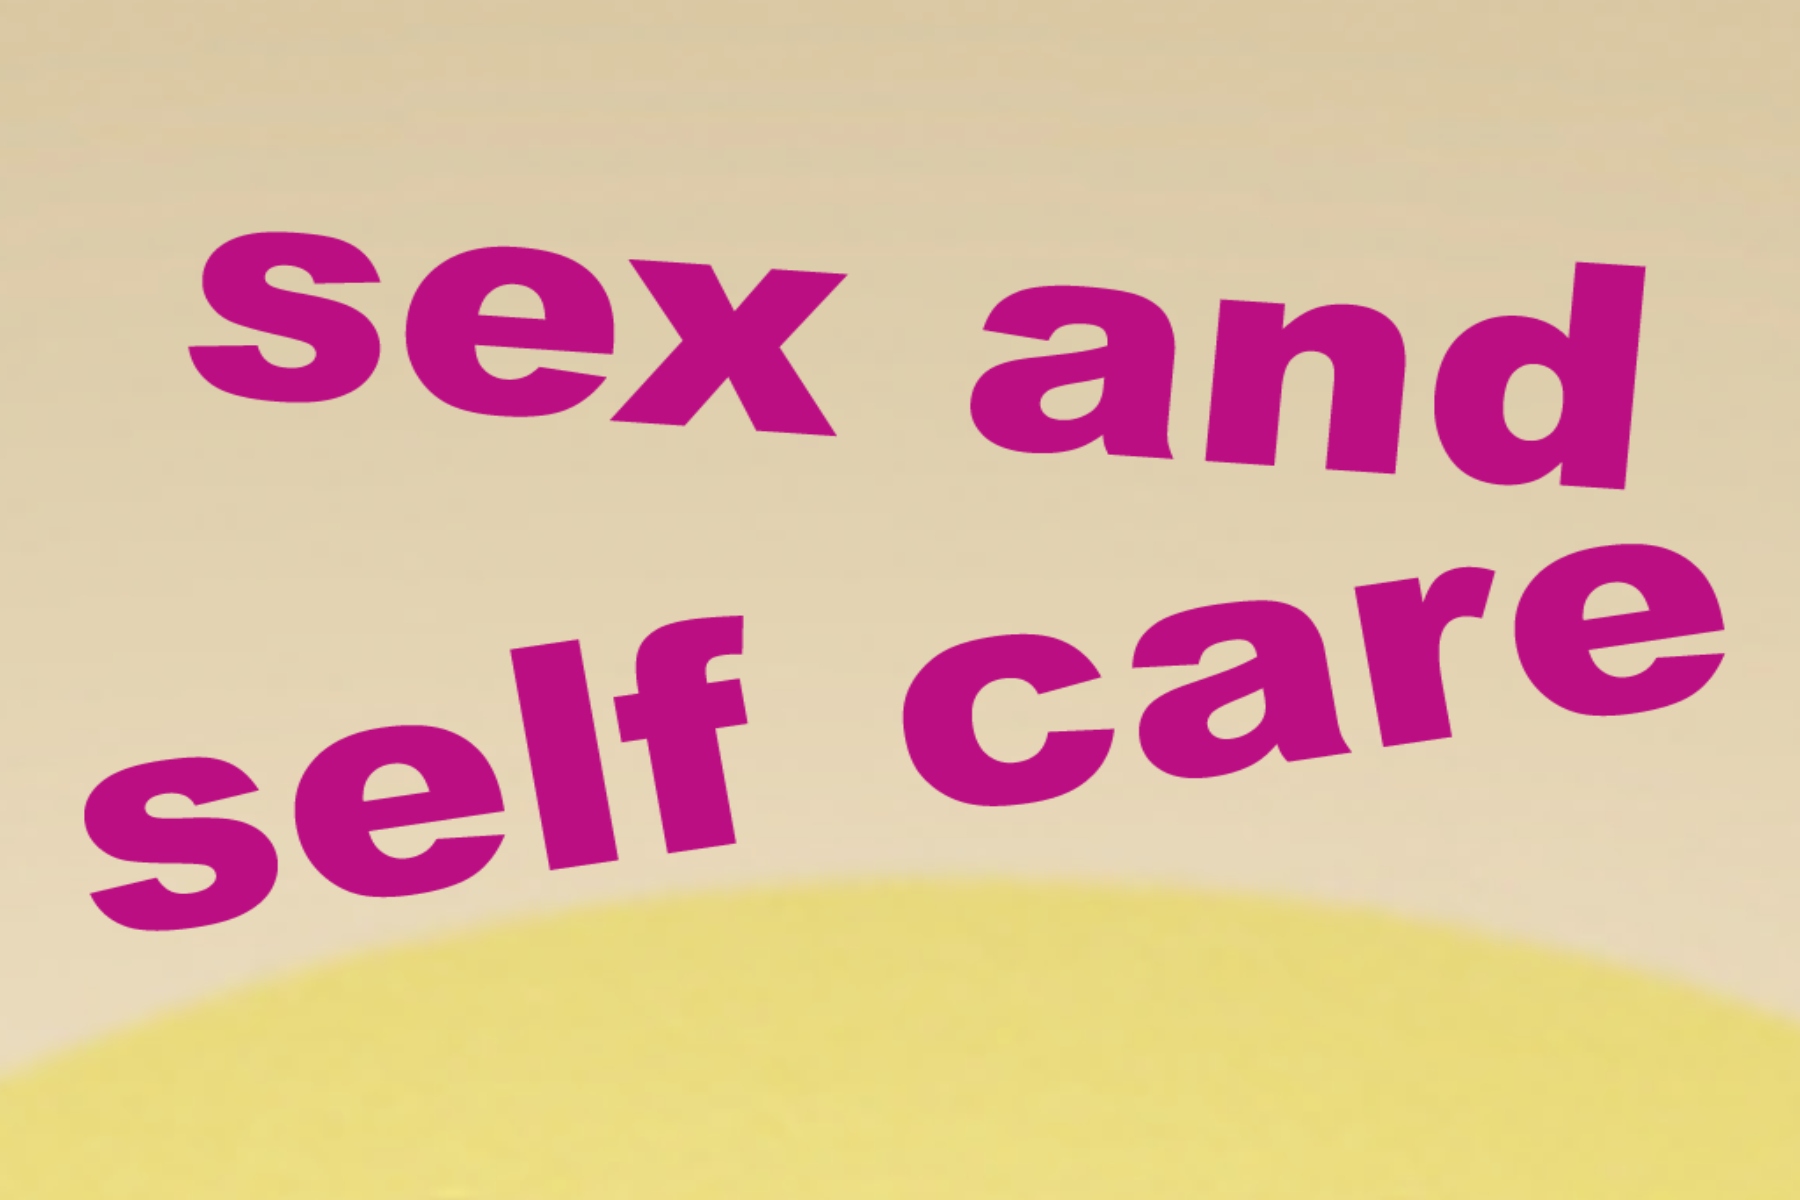 Σεξ συμβουλές: Tips αυτοφροντίδας για να απολαύσετε το sex στον μέγιστο βαθμό